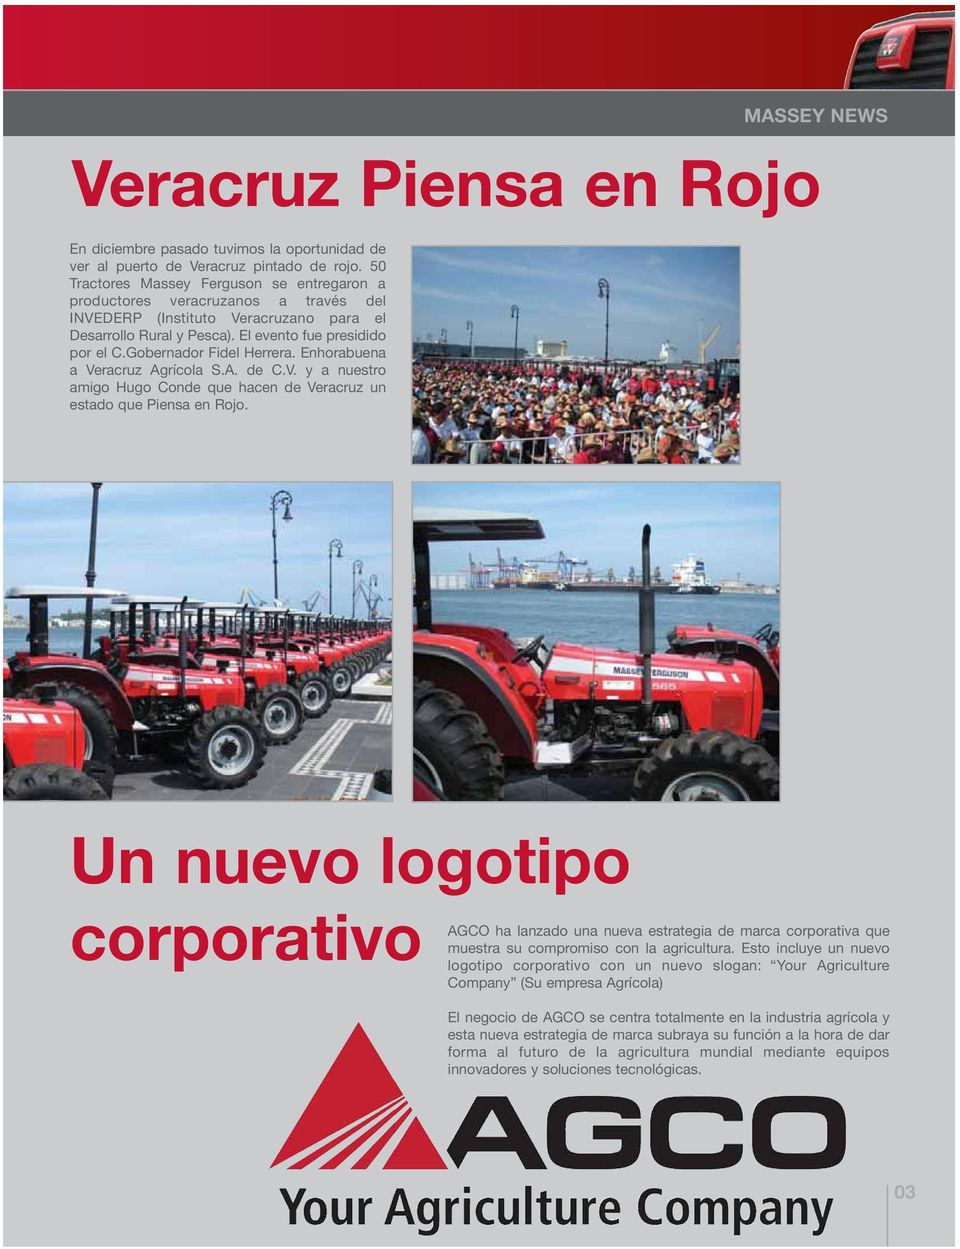 Gobernador Fidel Herrera. Enhorabuena a Veracruz Agrícola S.A. de C.V. y a nuestro amigo Hugo Conde que hacen de Veracruz un estado que Piensa en Rojo.